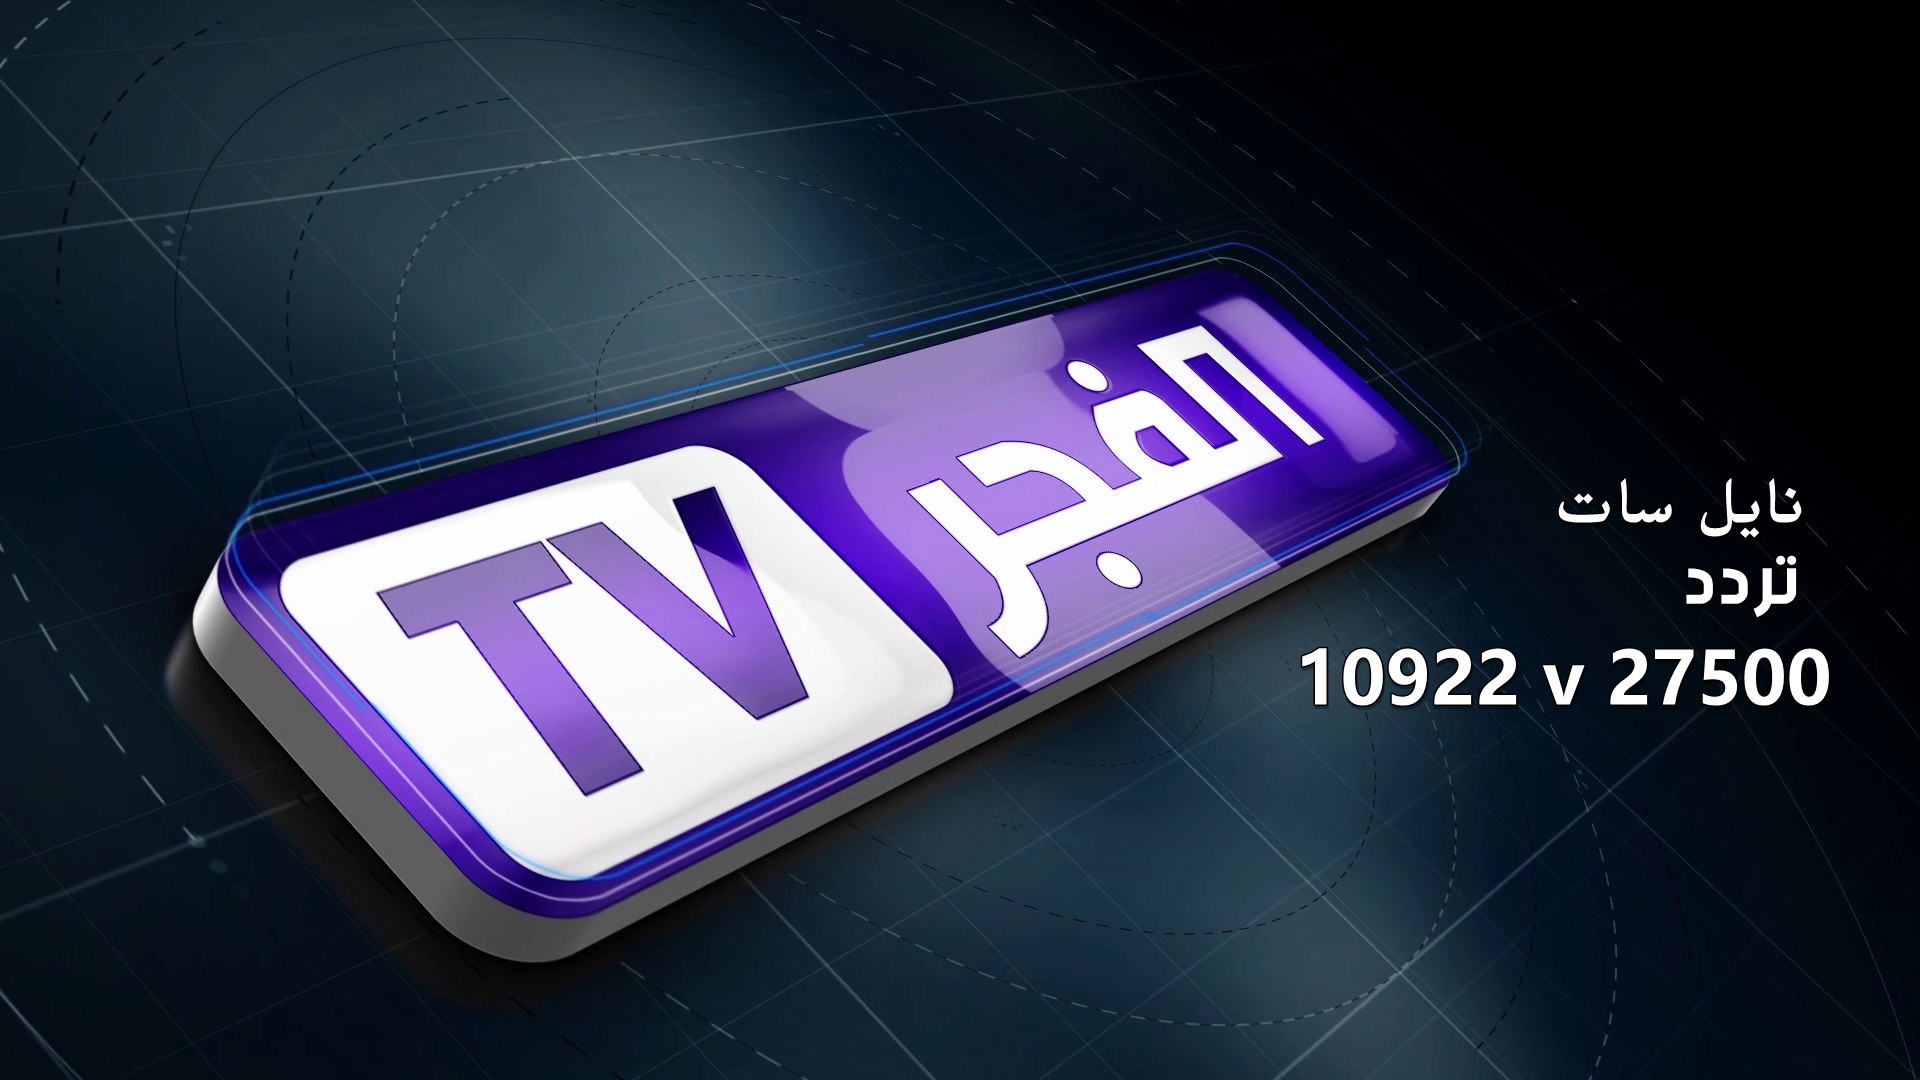 صورة تردد قناة الفجر الجزائرية وموعد عرض مسلسل قيامة عثمان